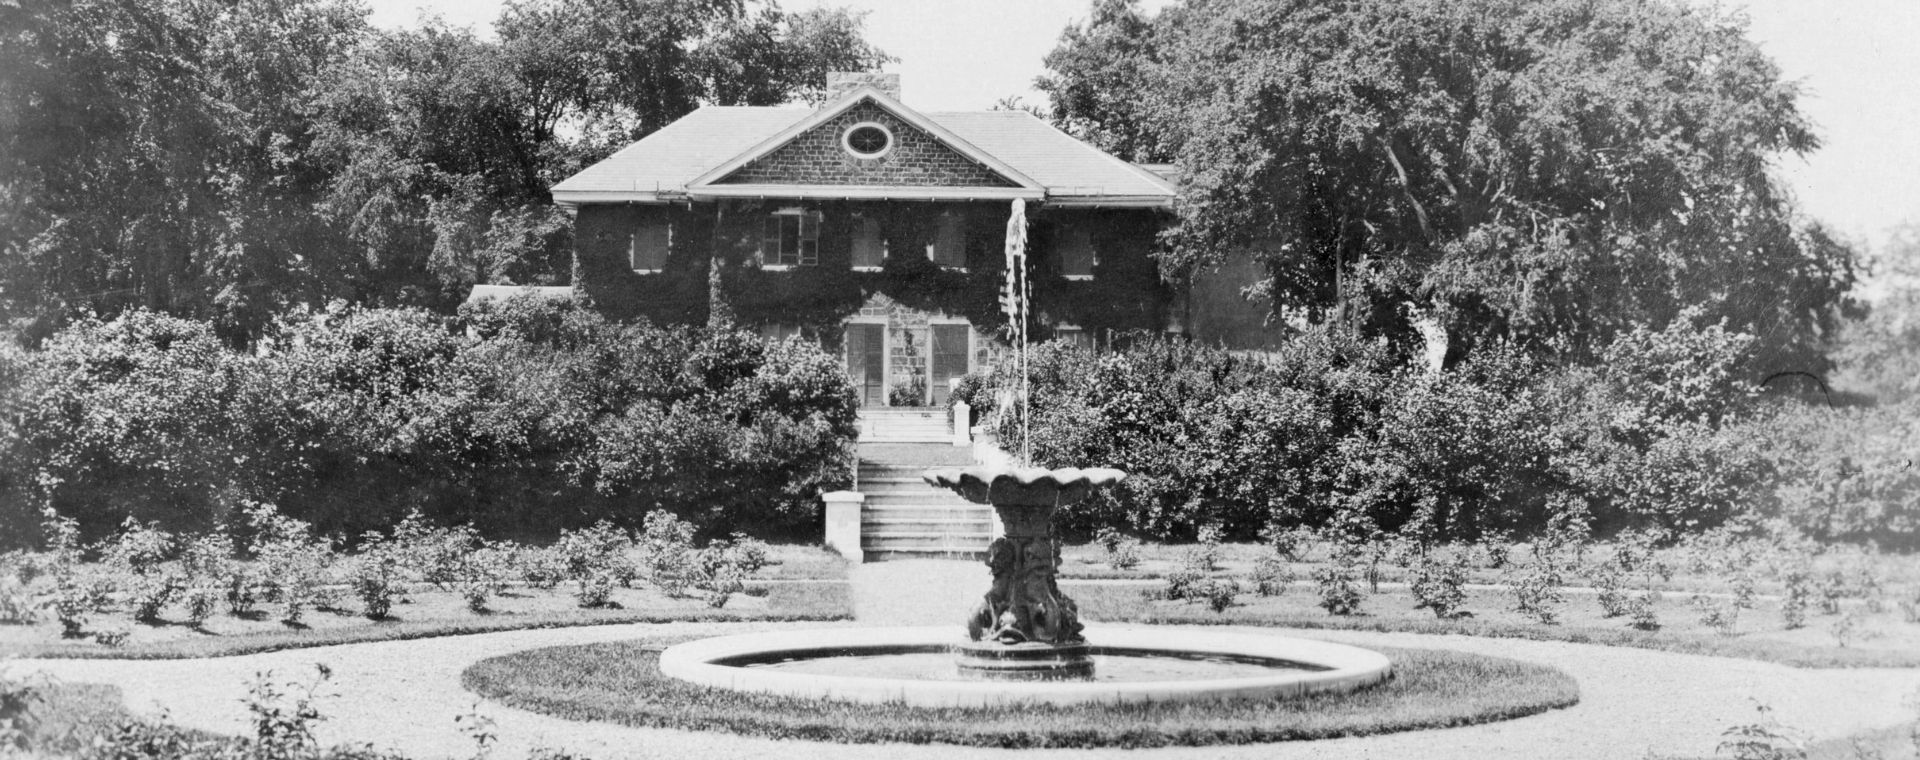 Photographie en noir et blanc d’un jardin circulaire d’arbustes entourant une fontaine devant une grande maison en pierre de deux étages, couverte de plantes grimpantes et munie d’un escalier donnant sur le jardin